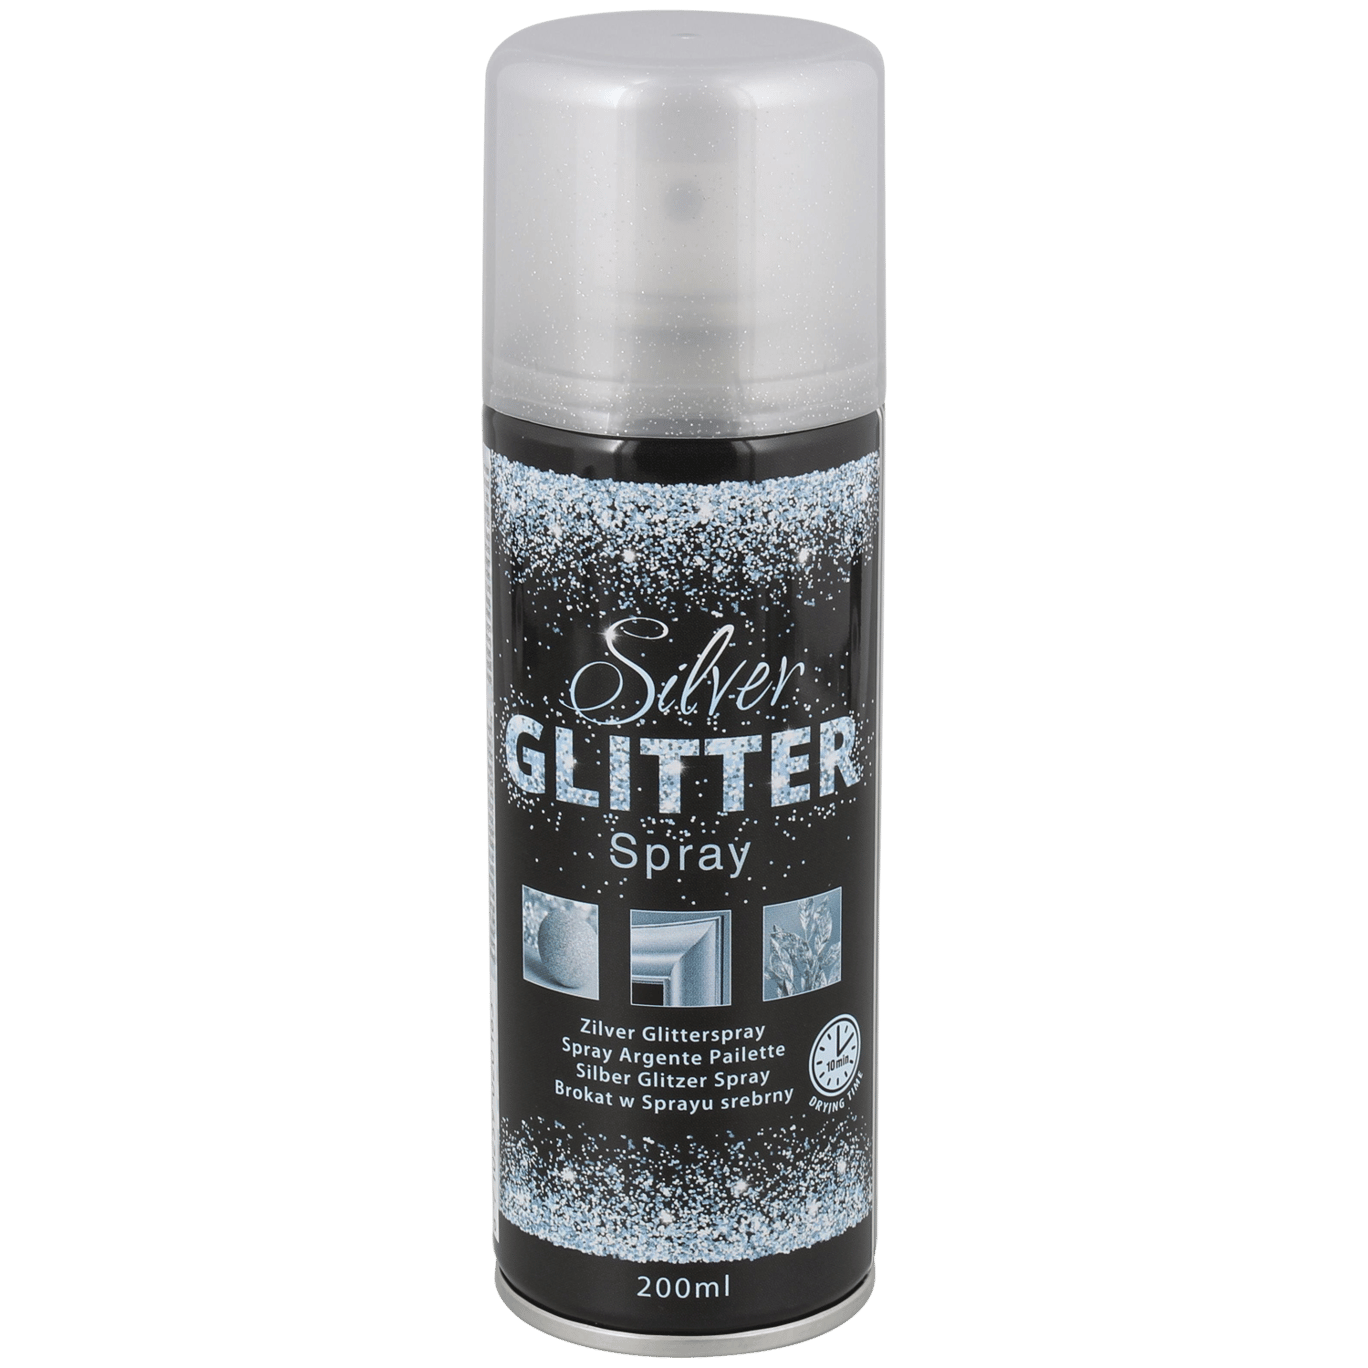 Zilveren glitter | Action.com